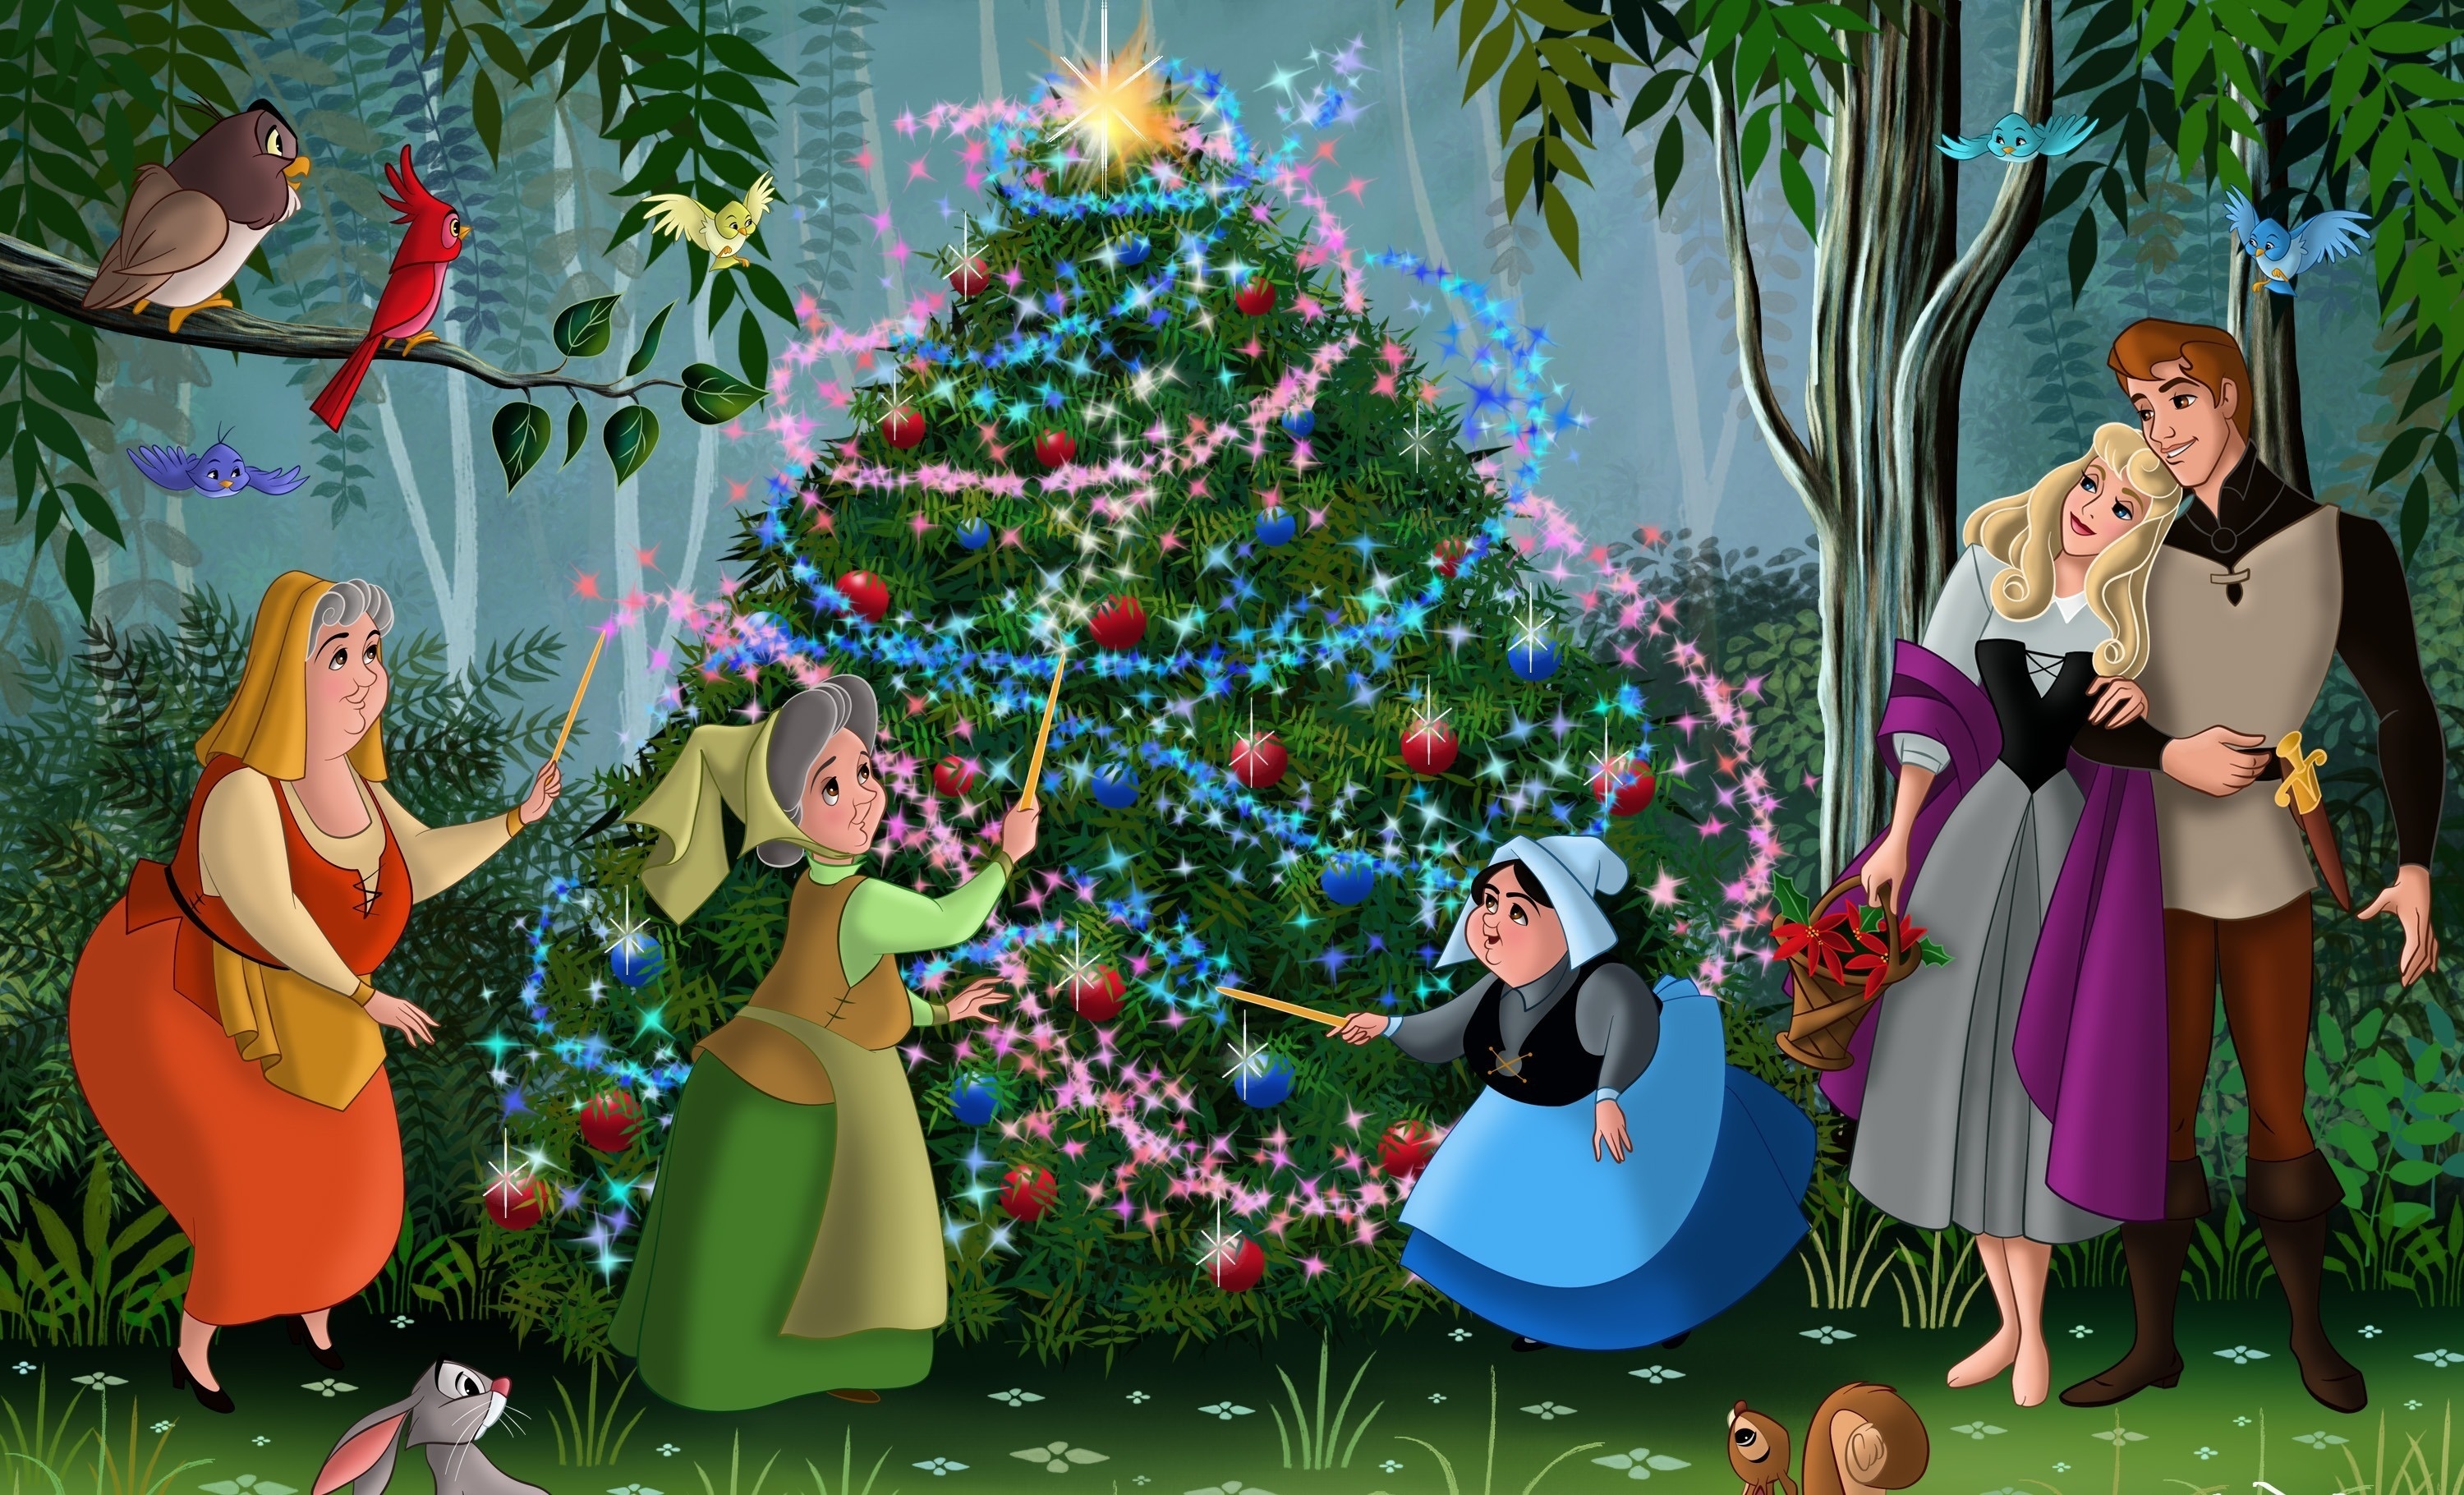 bella durmiente fondo de pantalla,dibujos animados,árbol de navidad,nochebuena,decoración navideña,árbol